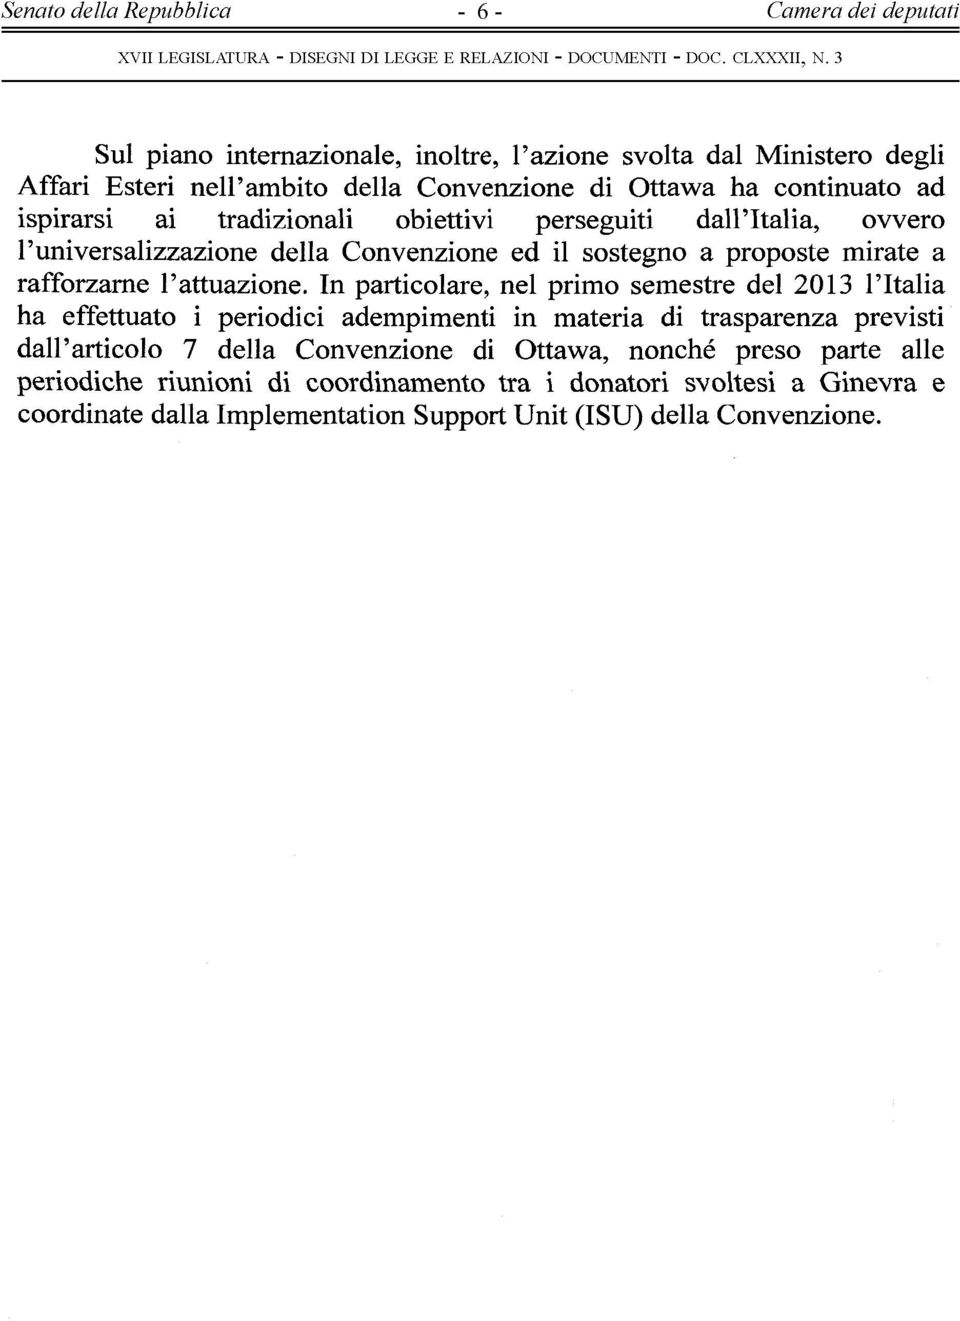 dali' Italia, ovvero l'universalizzazione della Convenzione ed il sostegno a proposte mirate a rafforzarne l'attuazione.